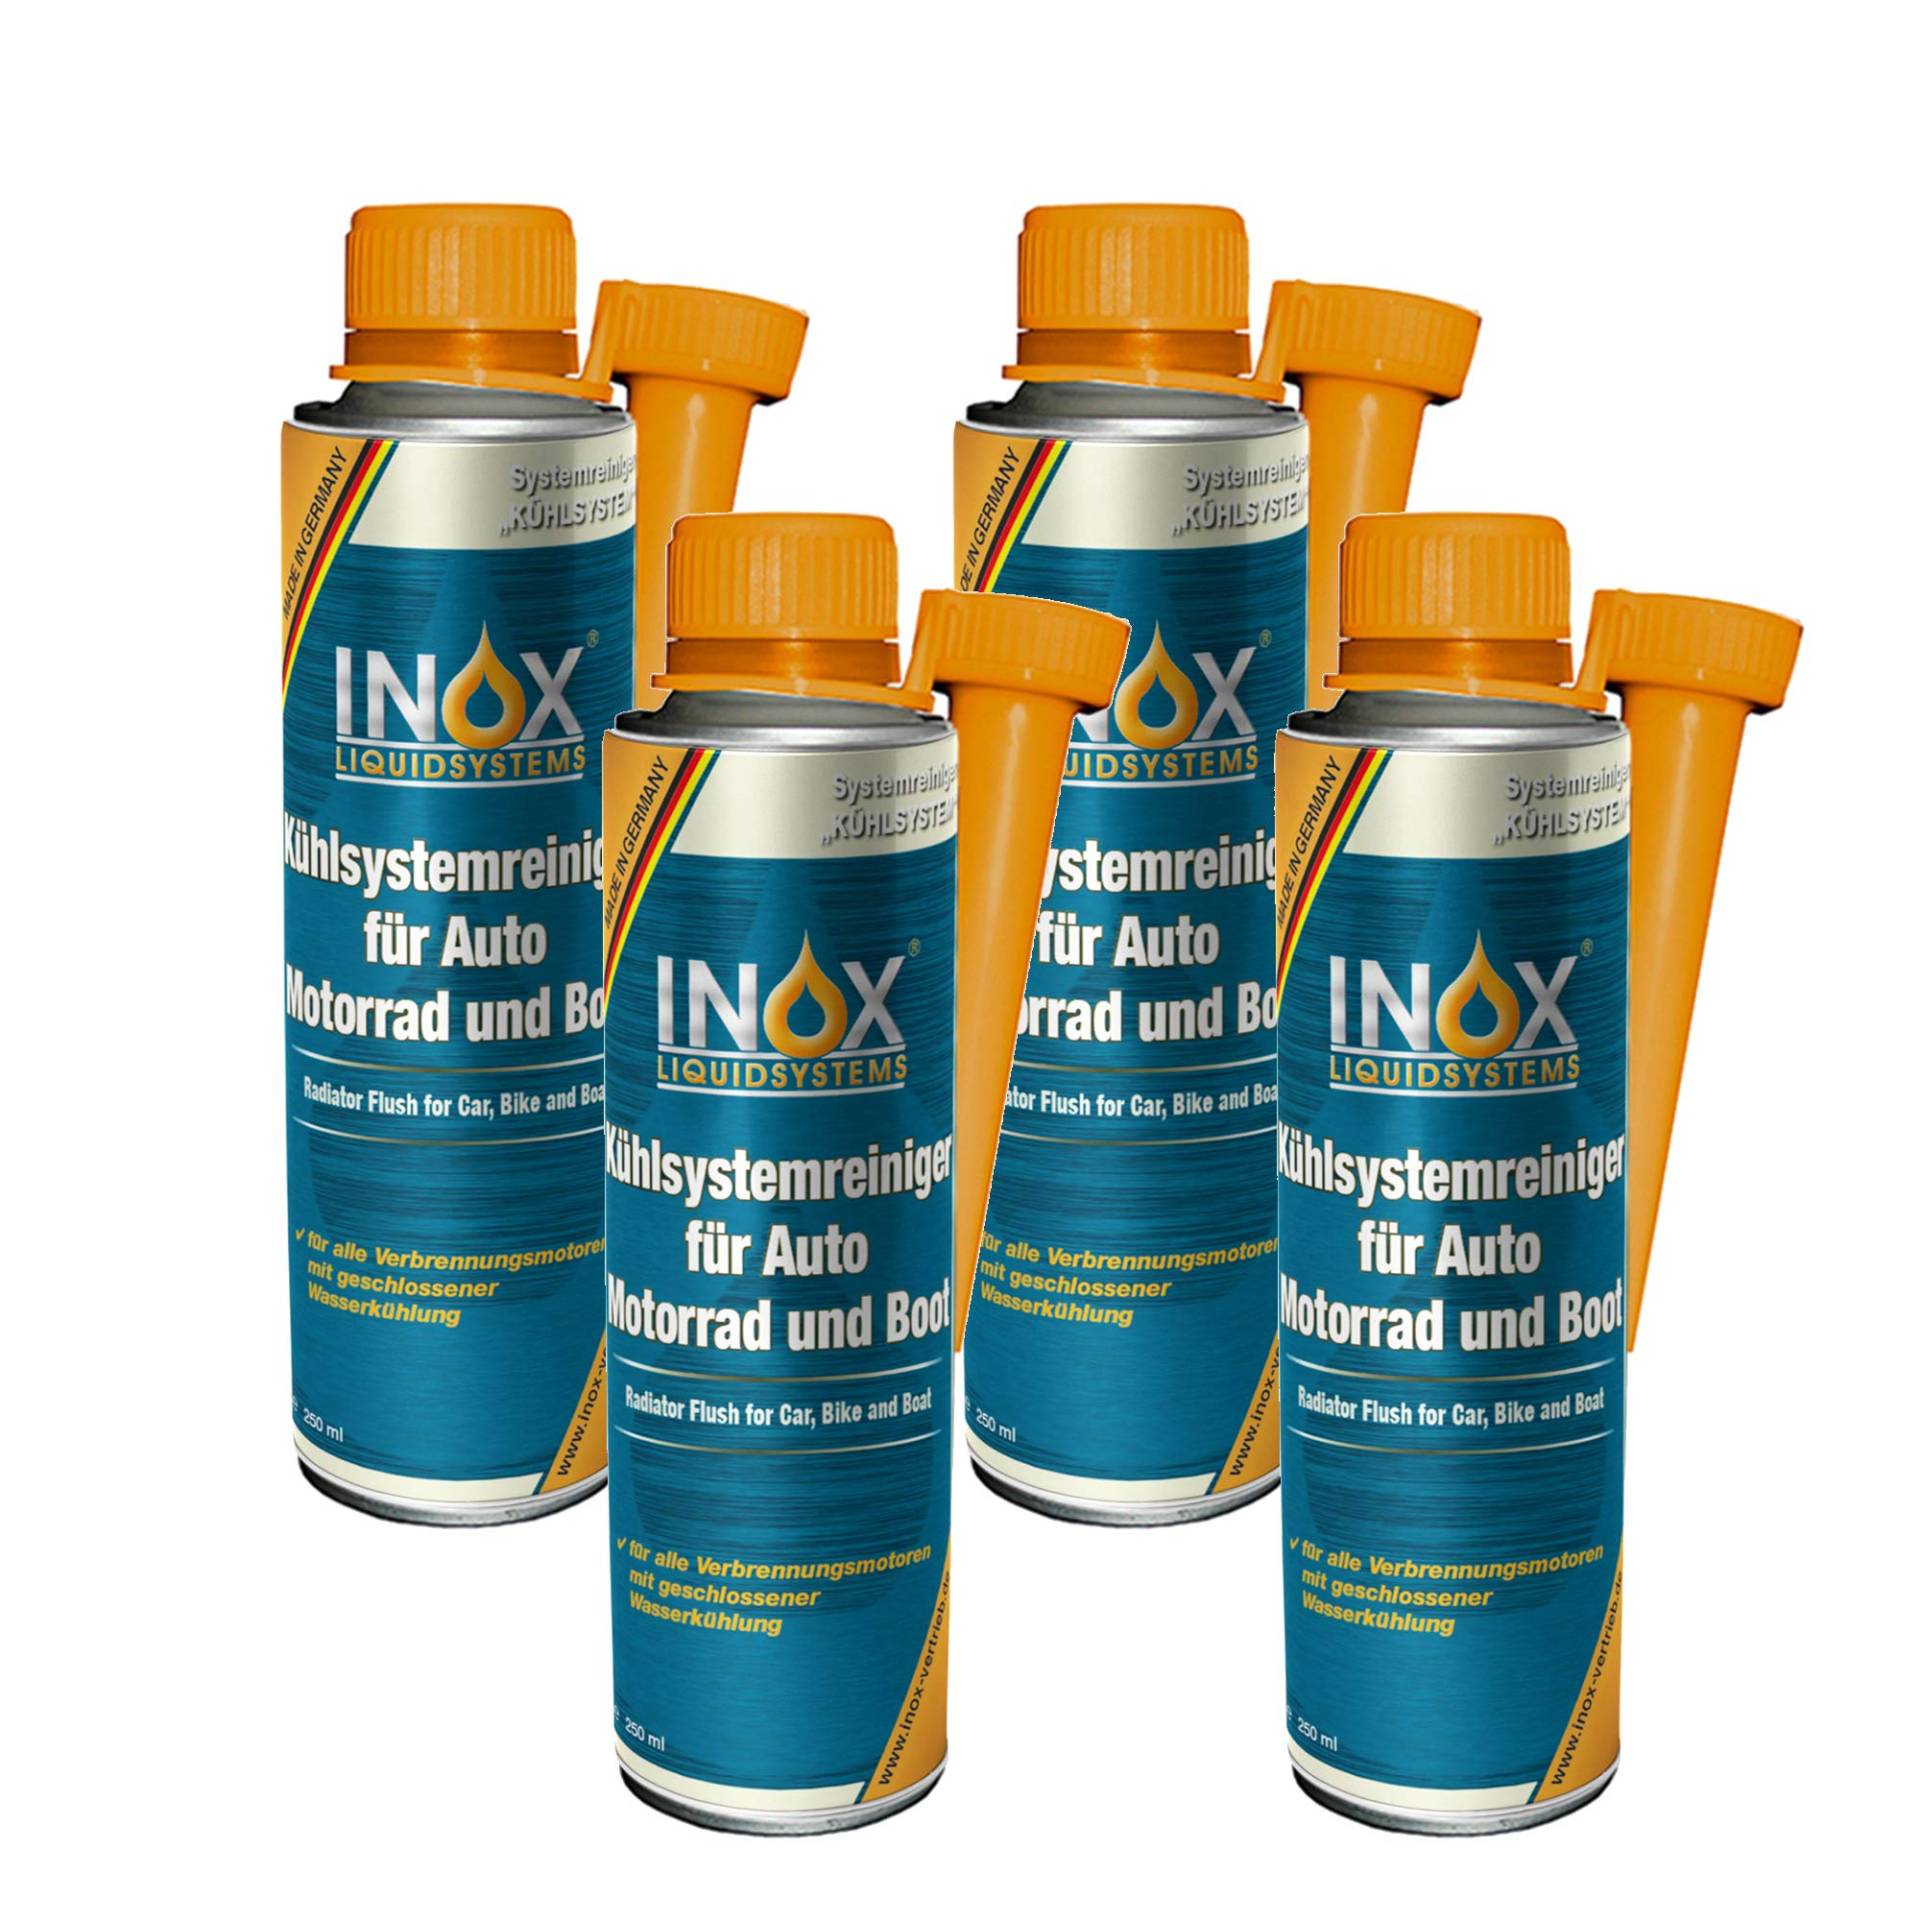 INOX® Kühlsystemreiniger Additiv, 4 x 250 ml - Kühlerschutz für Auto, Motor und Boot von INOX-LIQUIDSYSTEMS